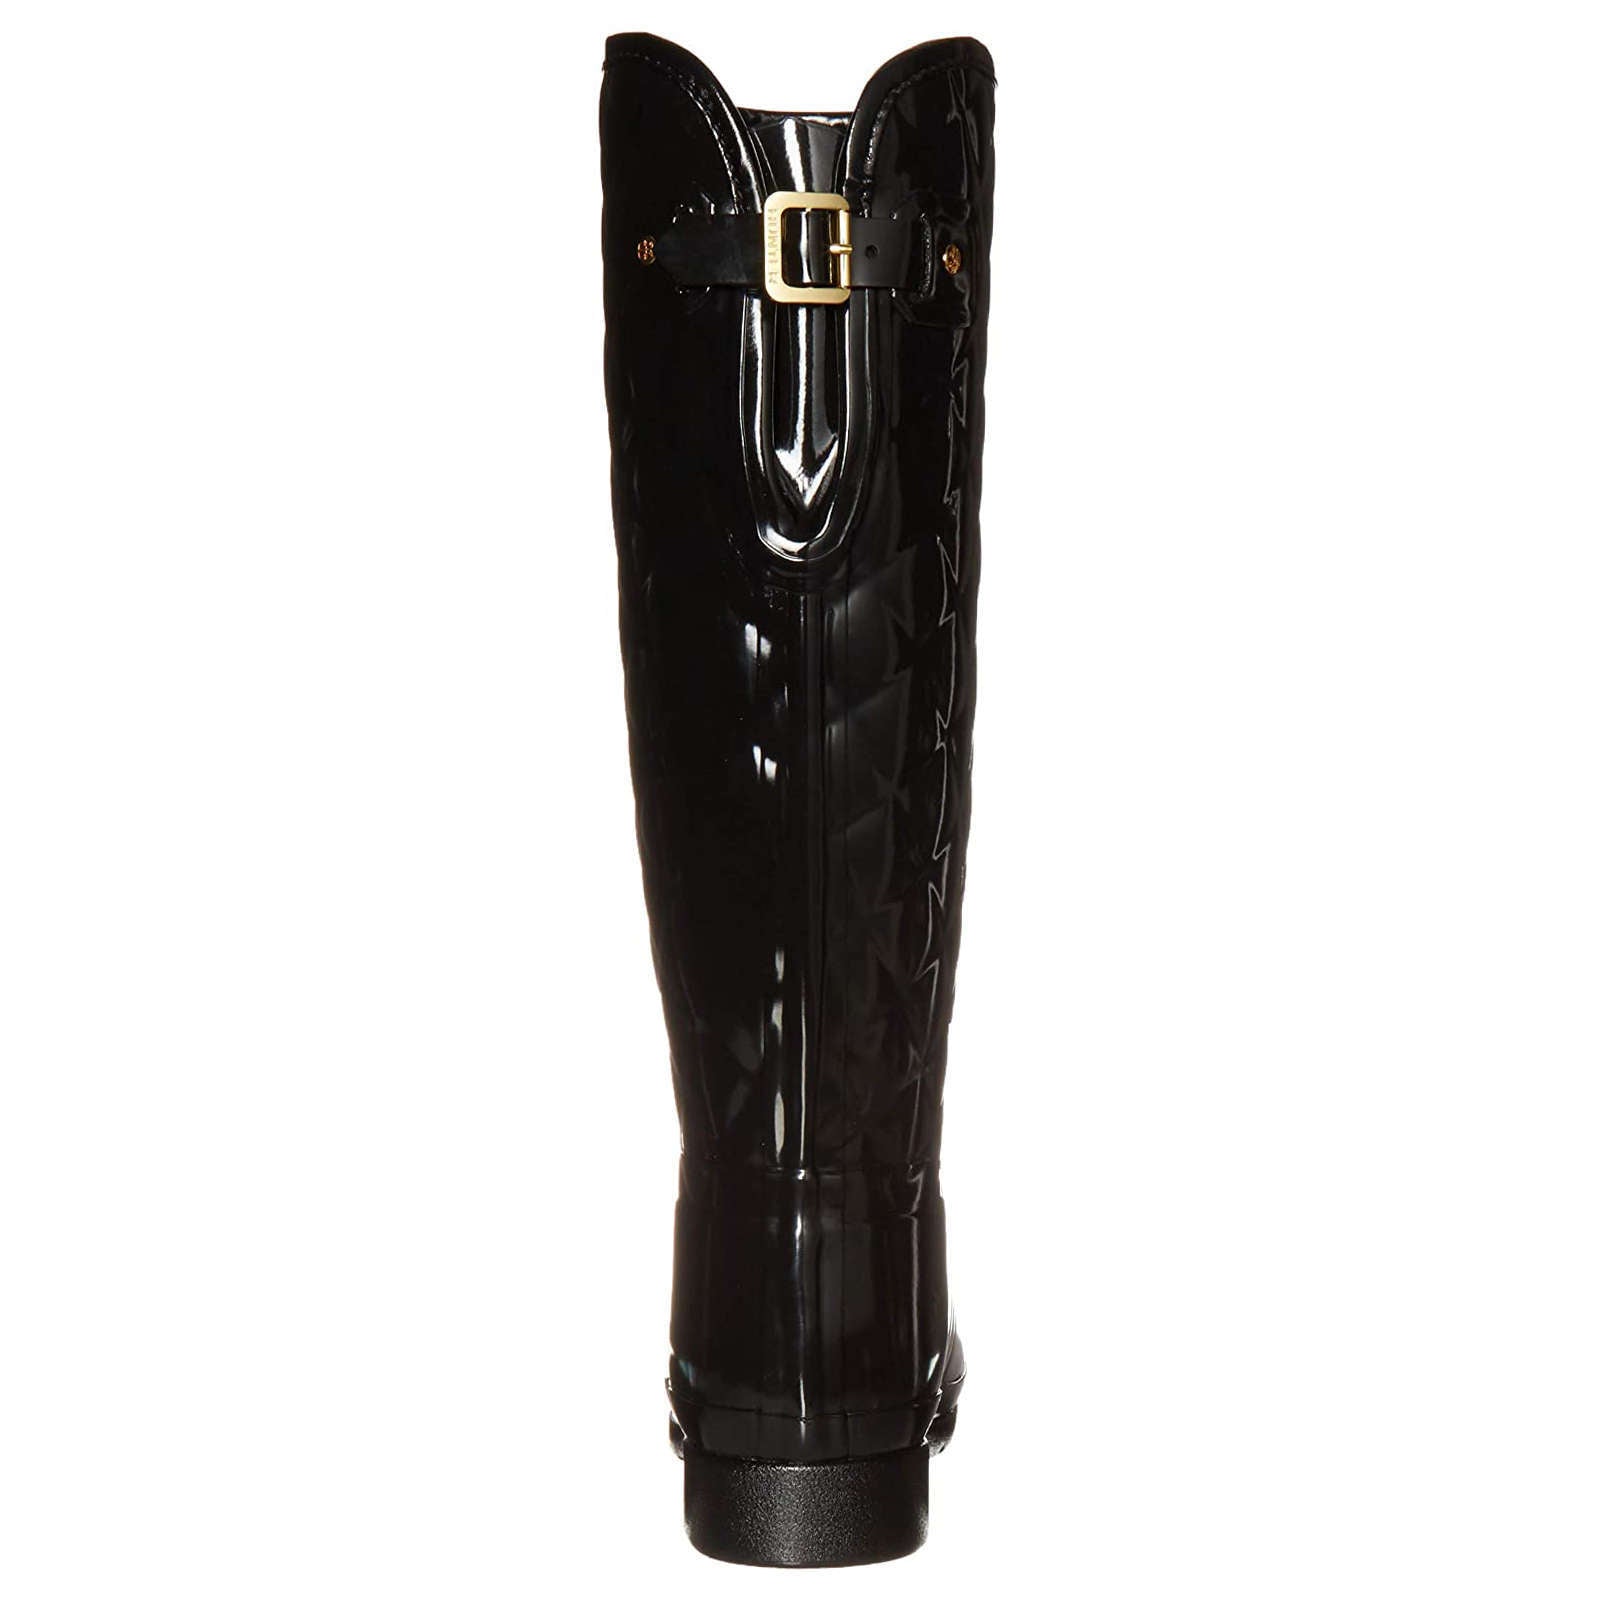 Refined Gloss Rubber Quilt Women's Tall Wellington Boots - Black / UK 4 |  US 6 Women | EU 37 / Medium